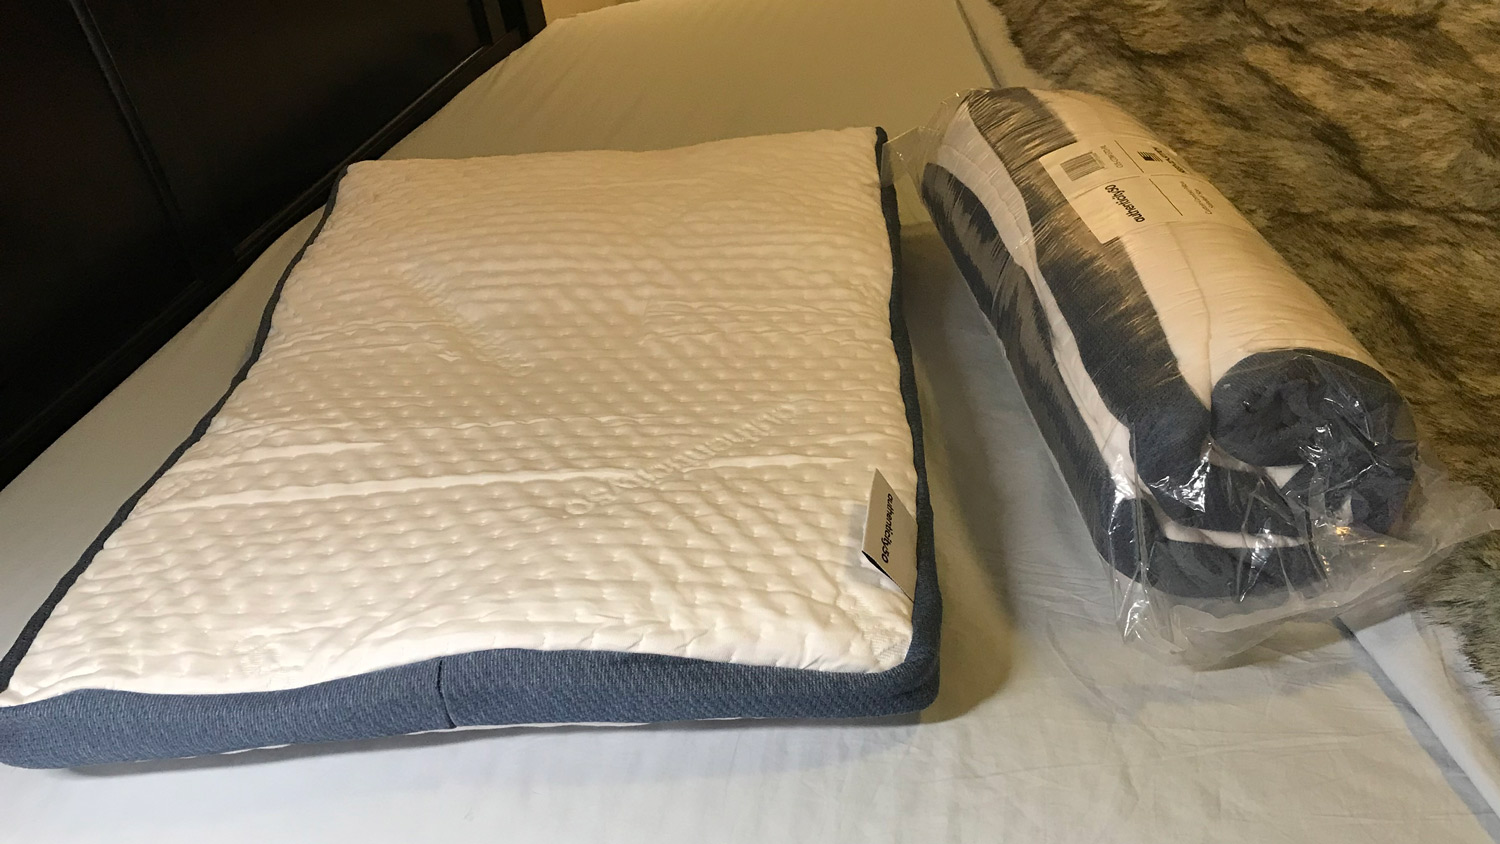 Duas almofadas Authenticity50 Custom Comfort, uma ainda enrolada em plástico